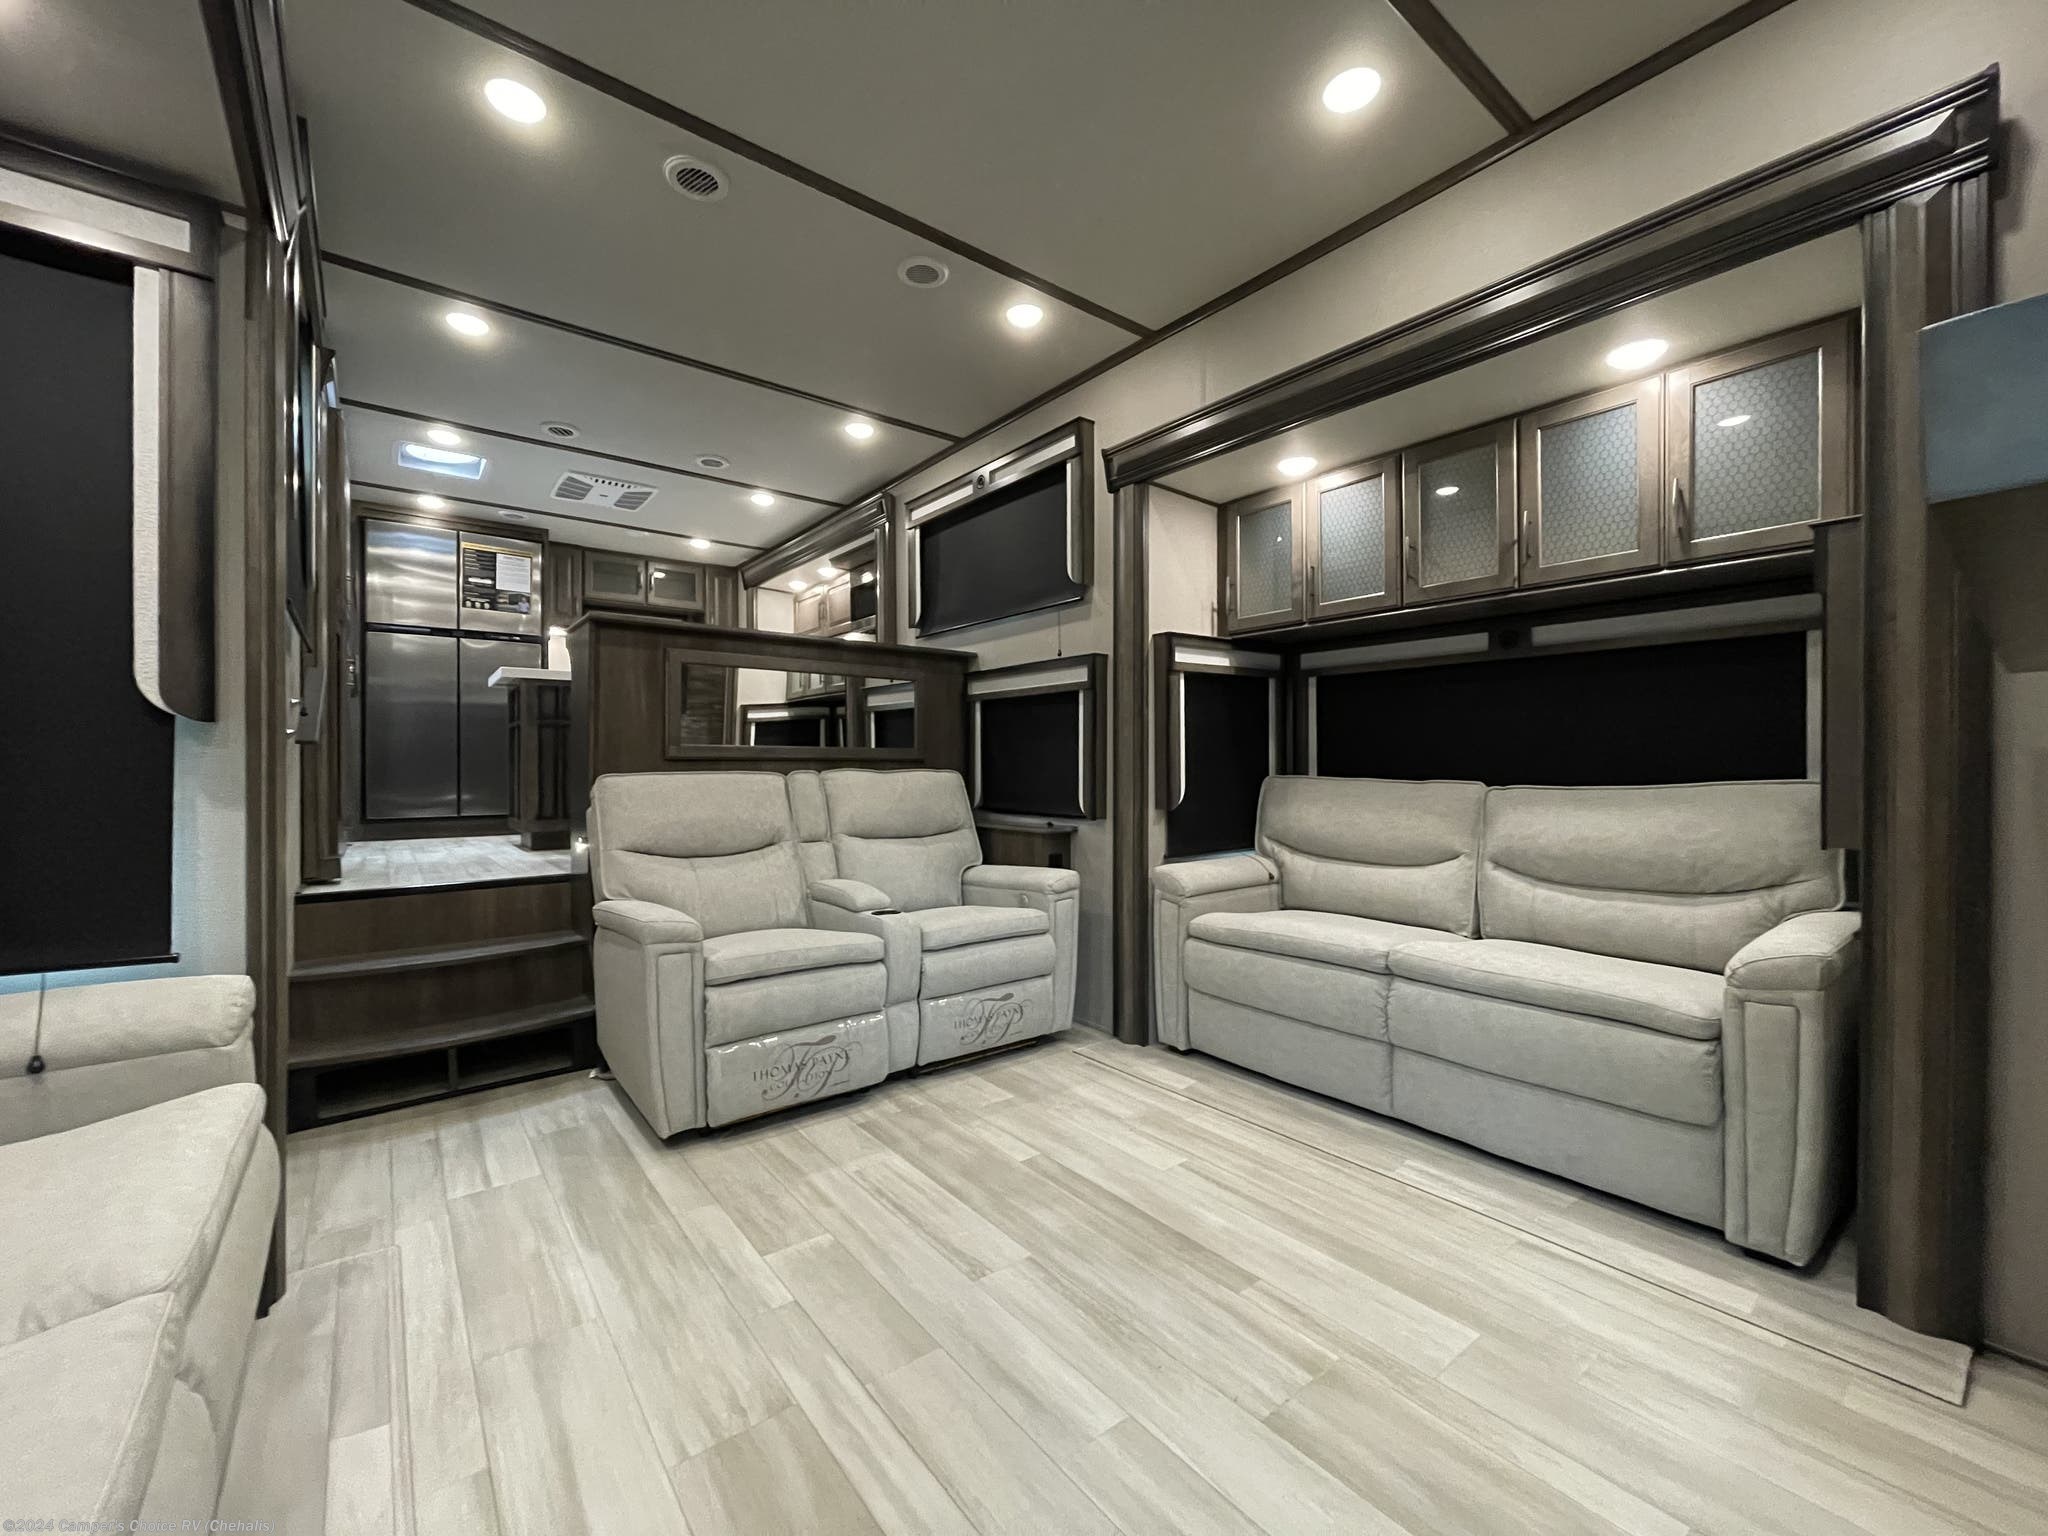 2021 Grand Design Solitude 390RKR RV for Sale in Silverdale, WA 98383